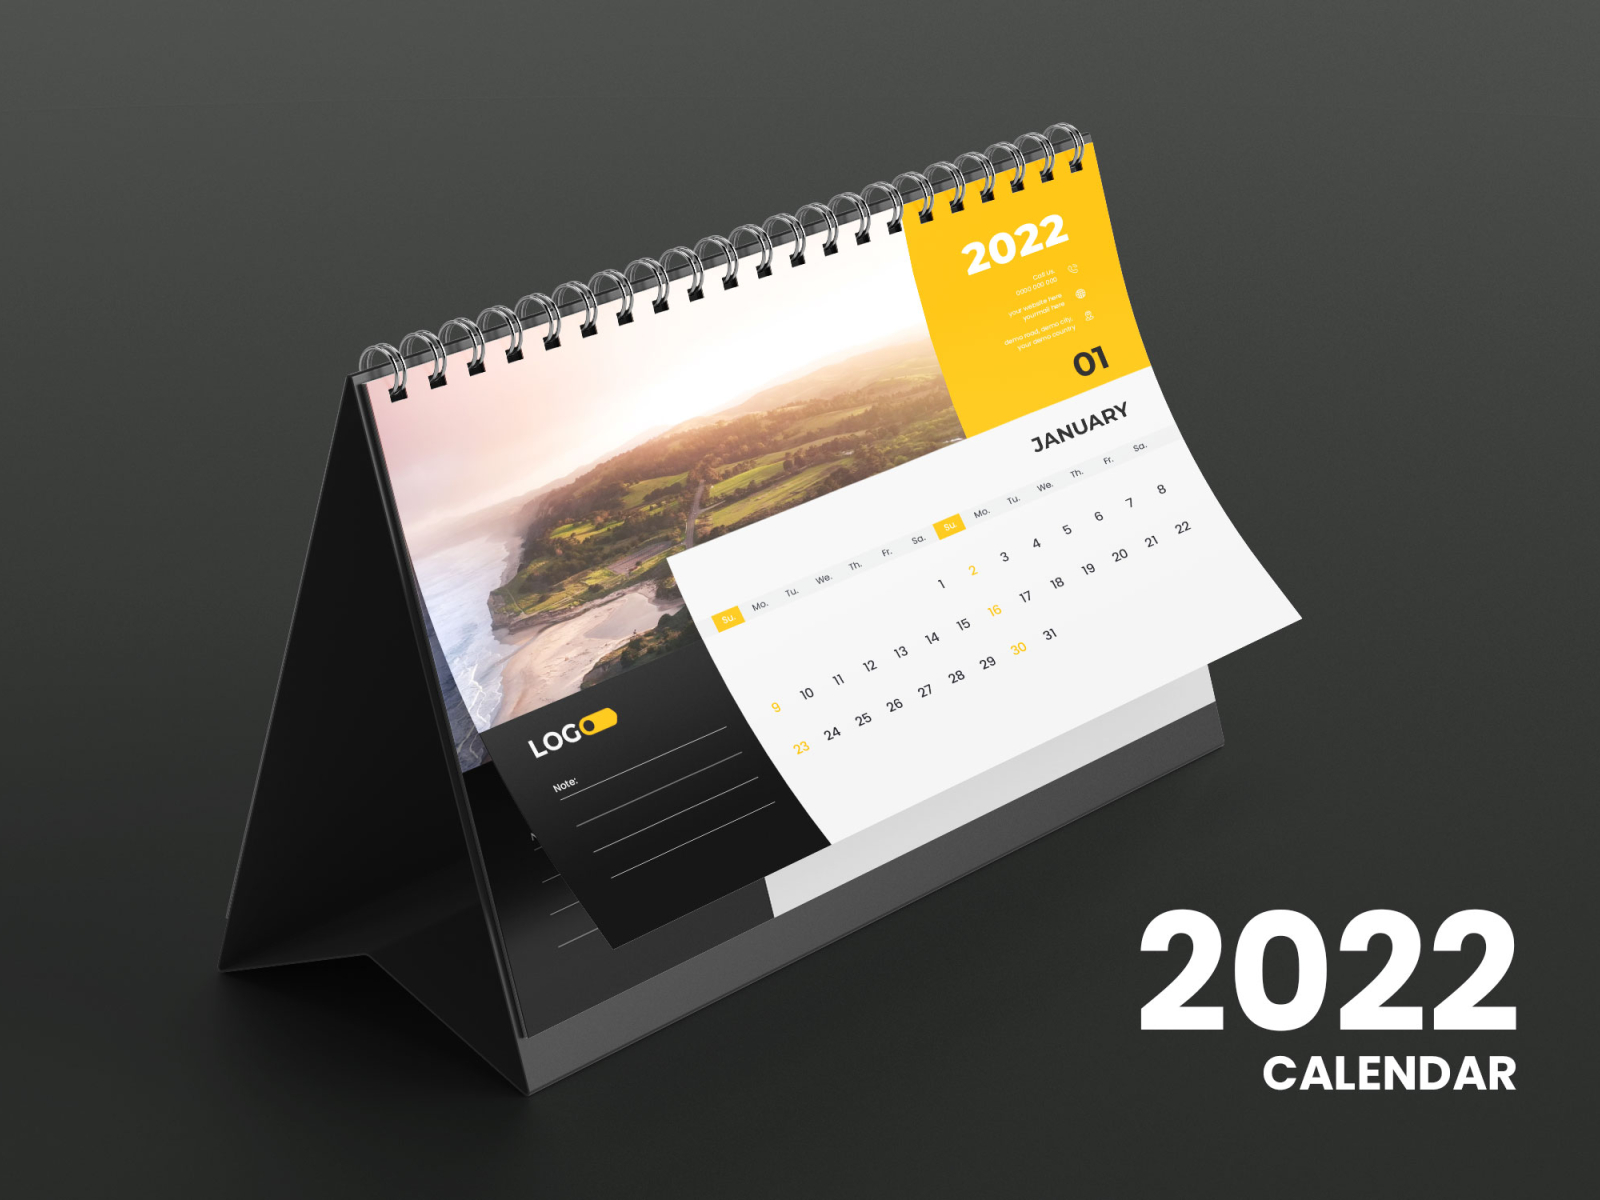 2022 Desk calendar design 2022 2022 calendar 2022 desk calendar business calendar calendar design corporate design desk calendar graphic design wall calendar